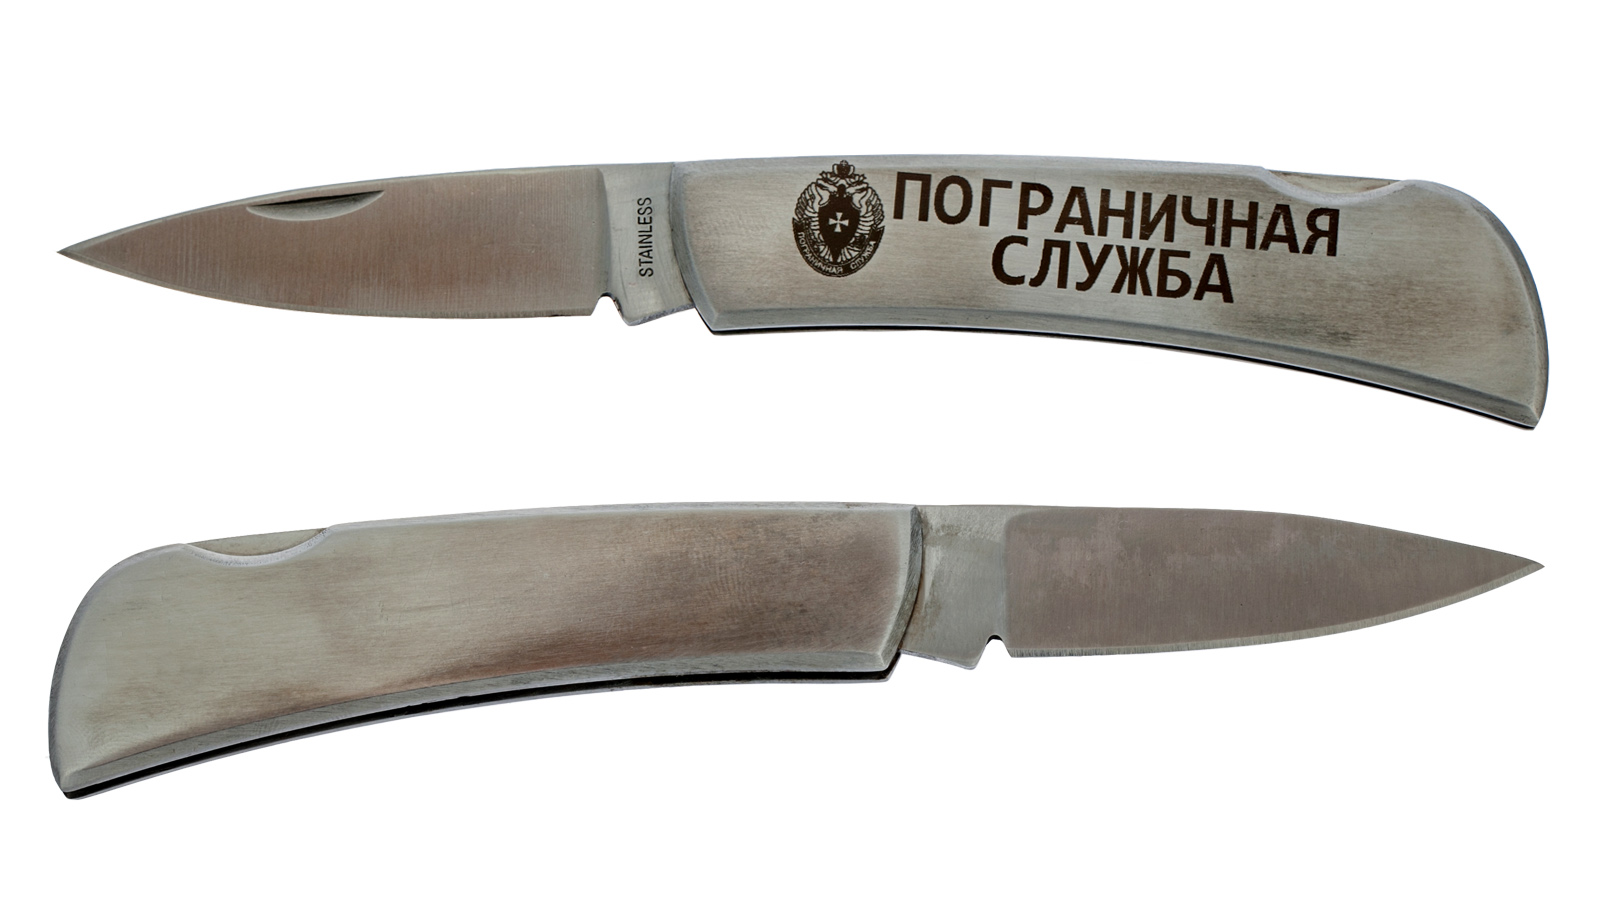 Коллекционный складной нож "Пограничная служба" с гравировкой